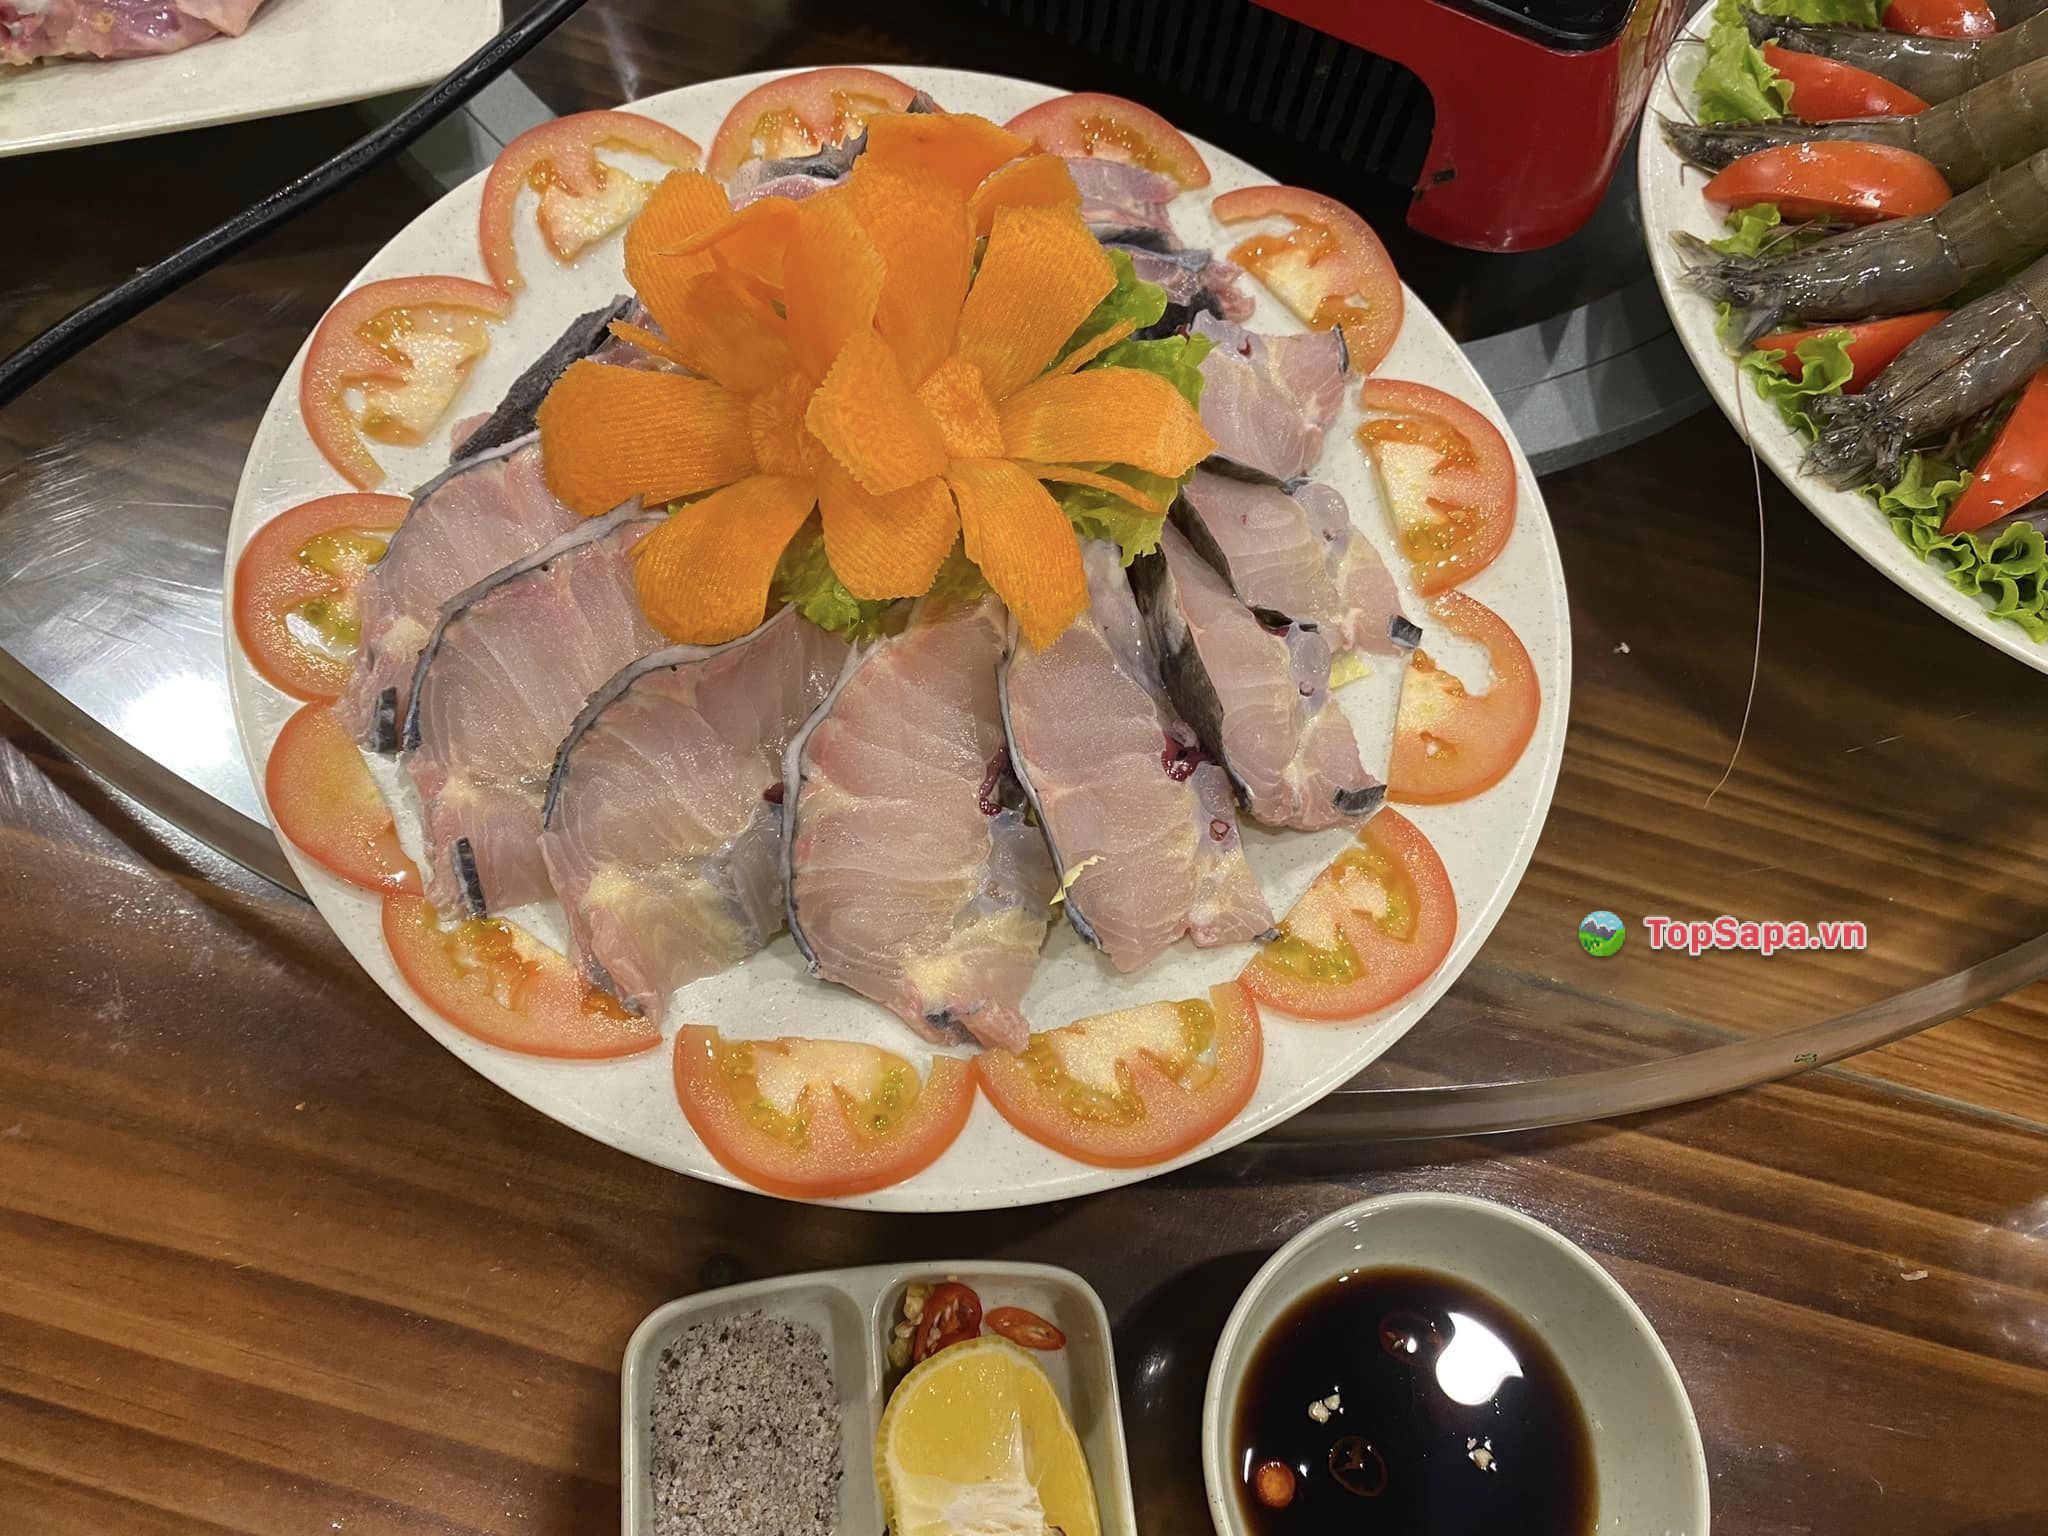 Thực đơn của Viet Deli cũng rất đa dạng các món được chế biến từ cá hồi, cá tầm, lợn bản